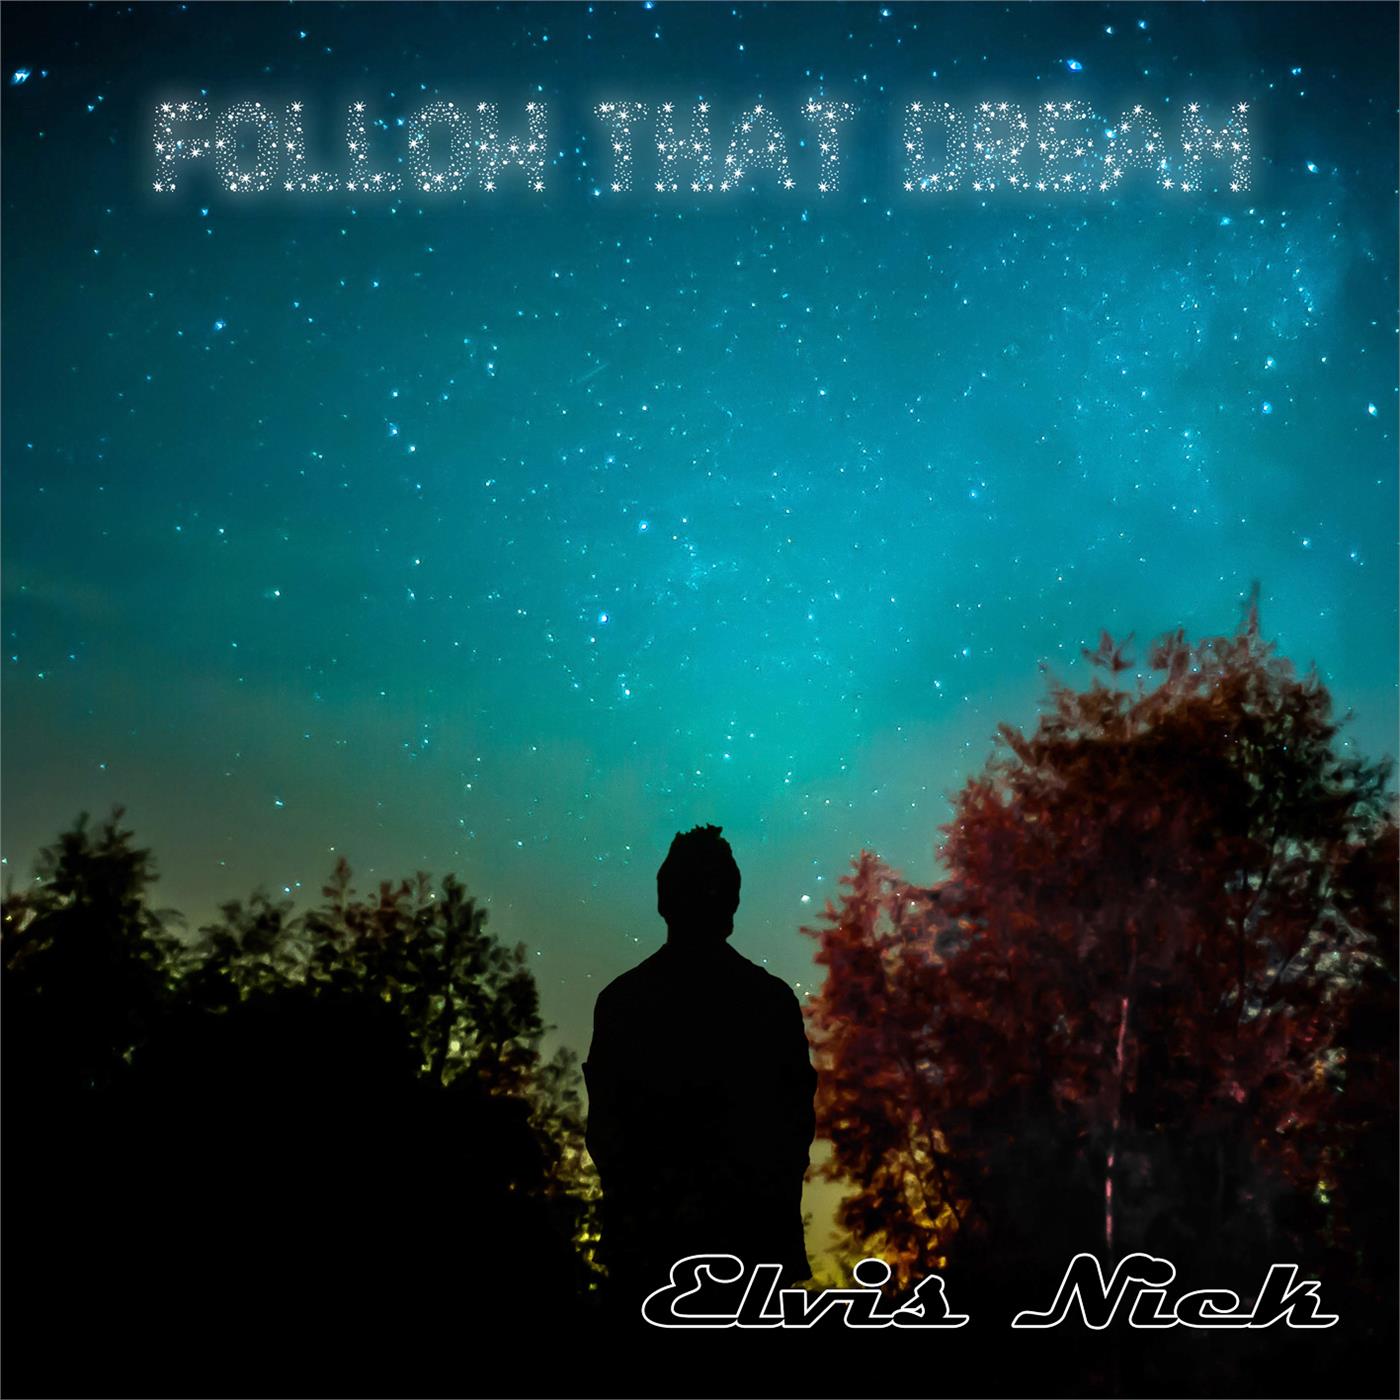 Follow that dream